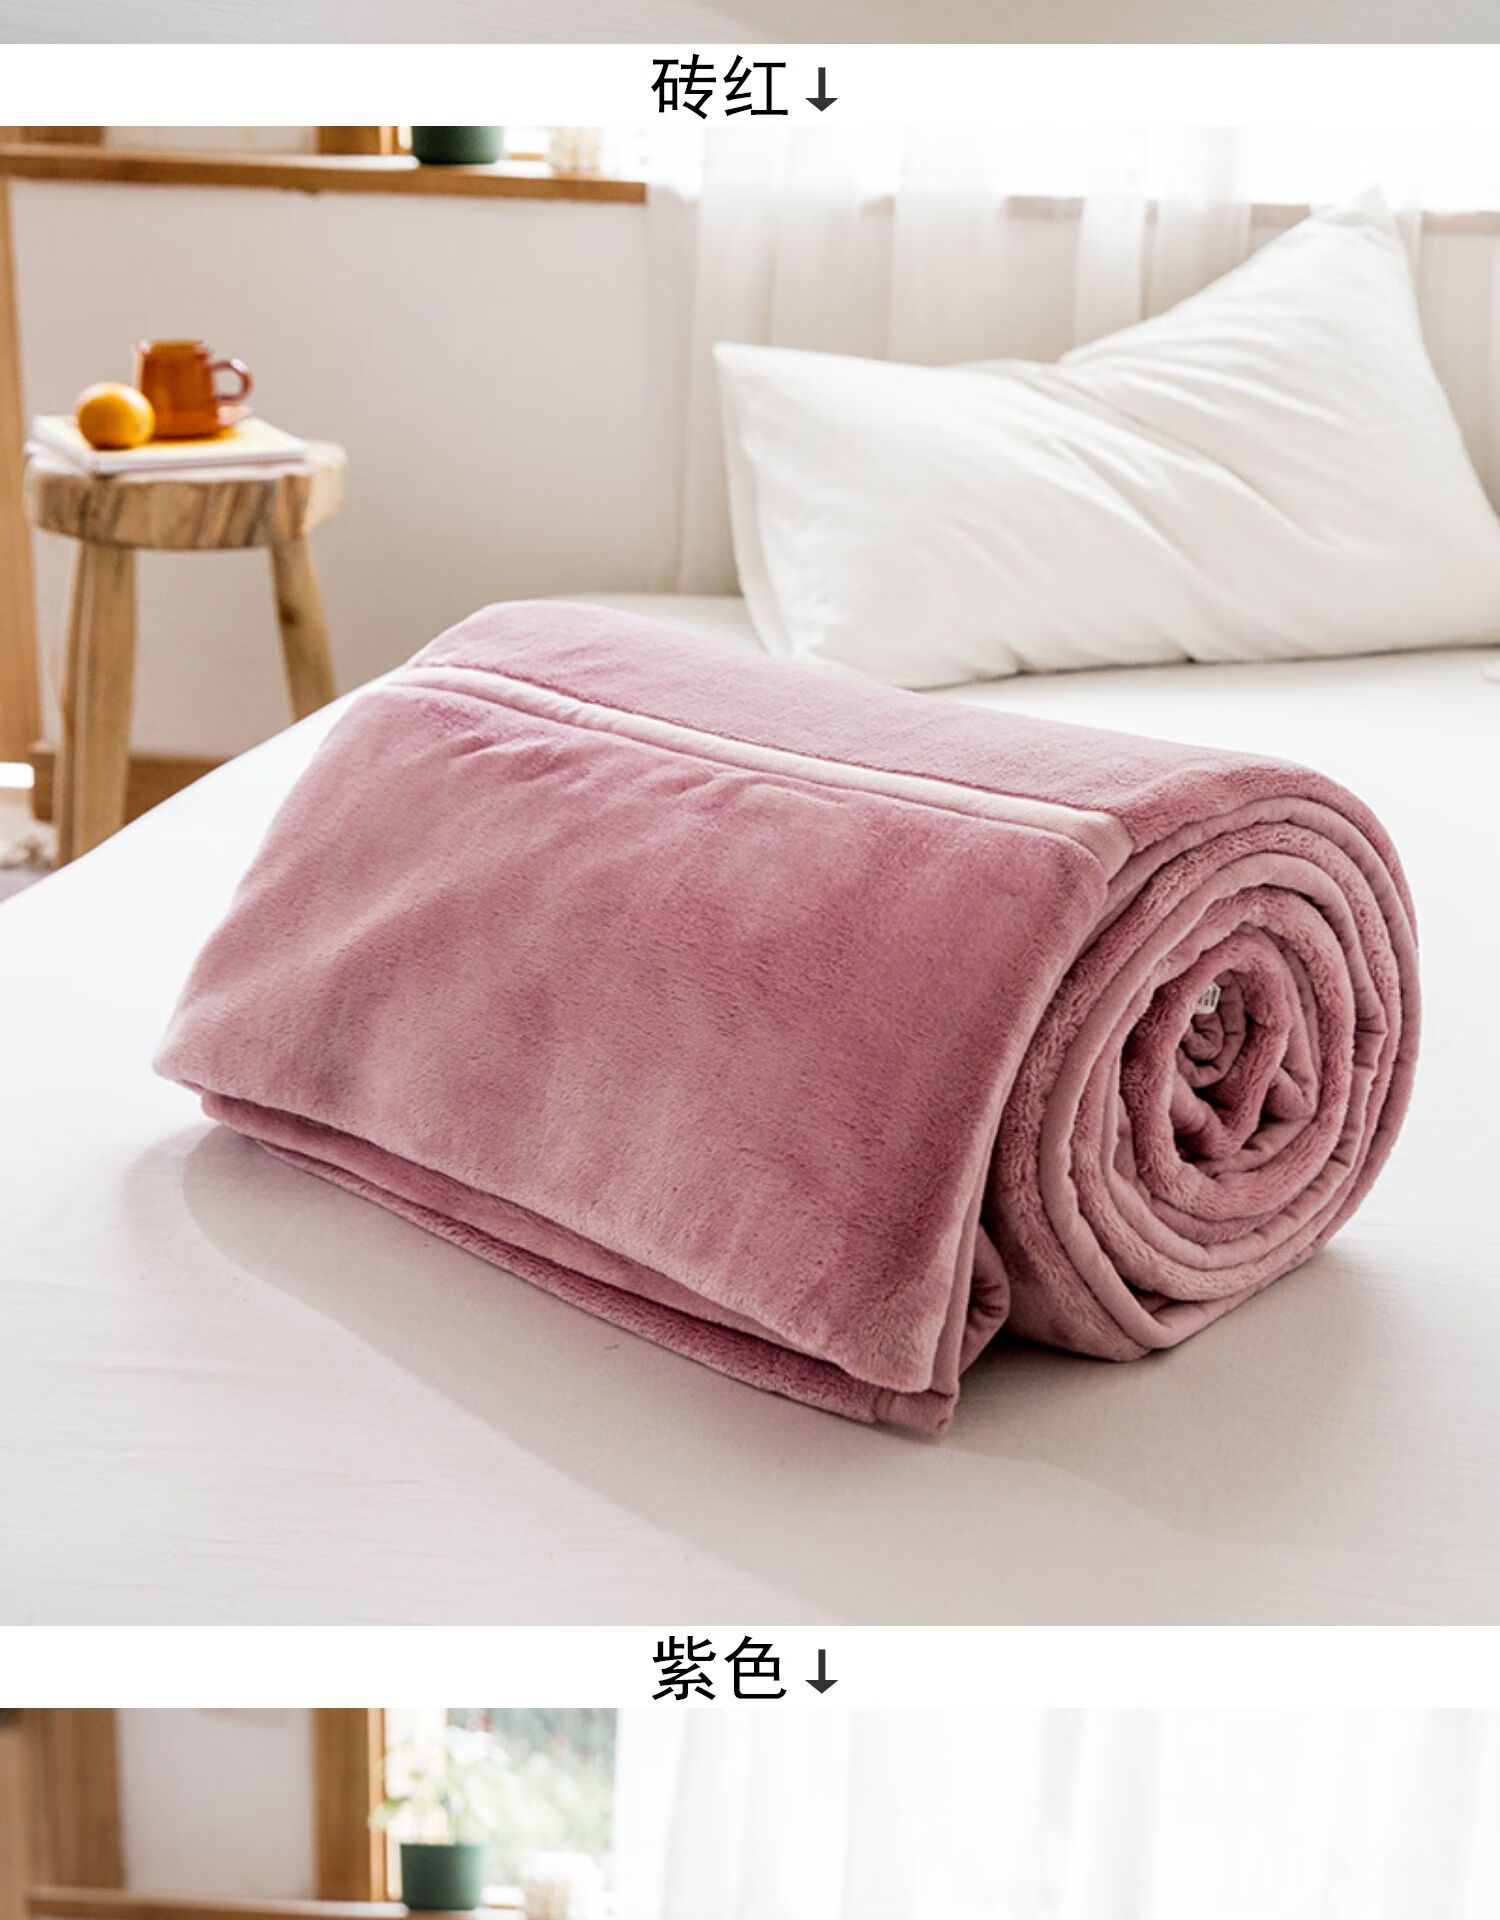 珊瑚绒毯子办公室单人午睡小毛毯学生宿舍盖毯毛巾被砖红180200cm4斤